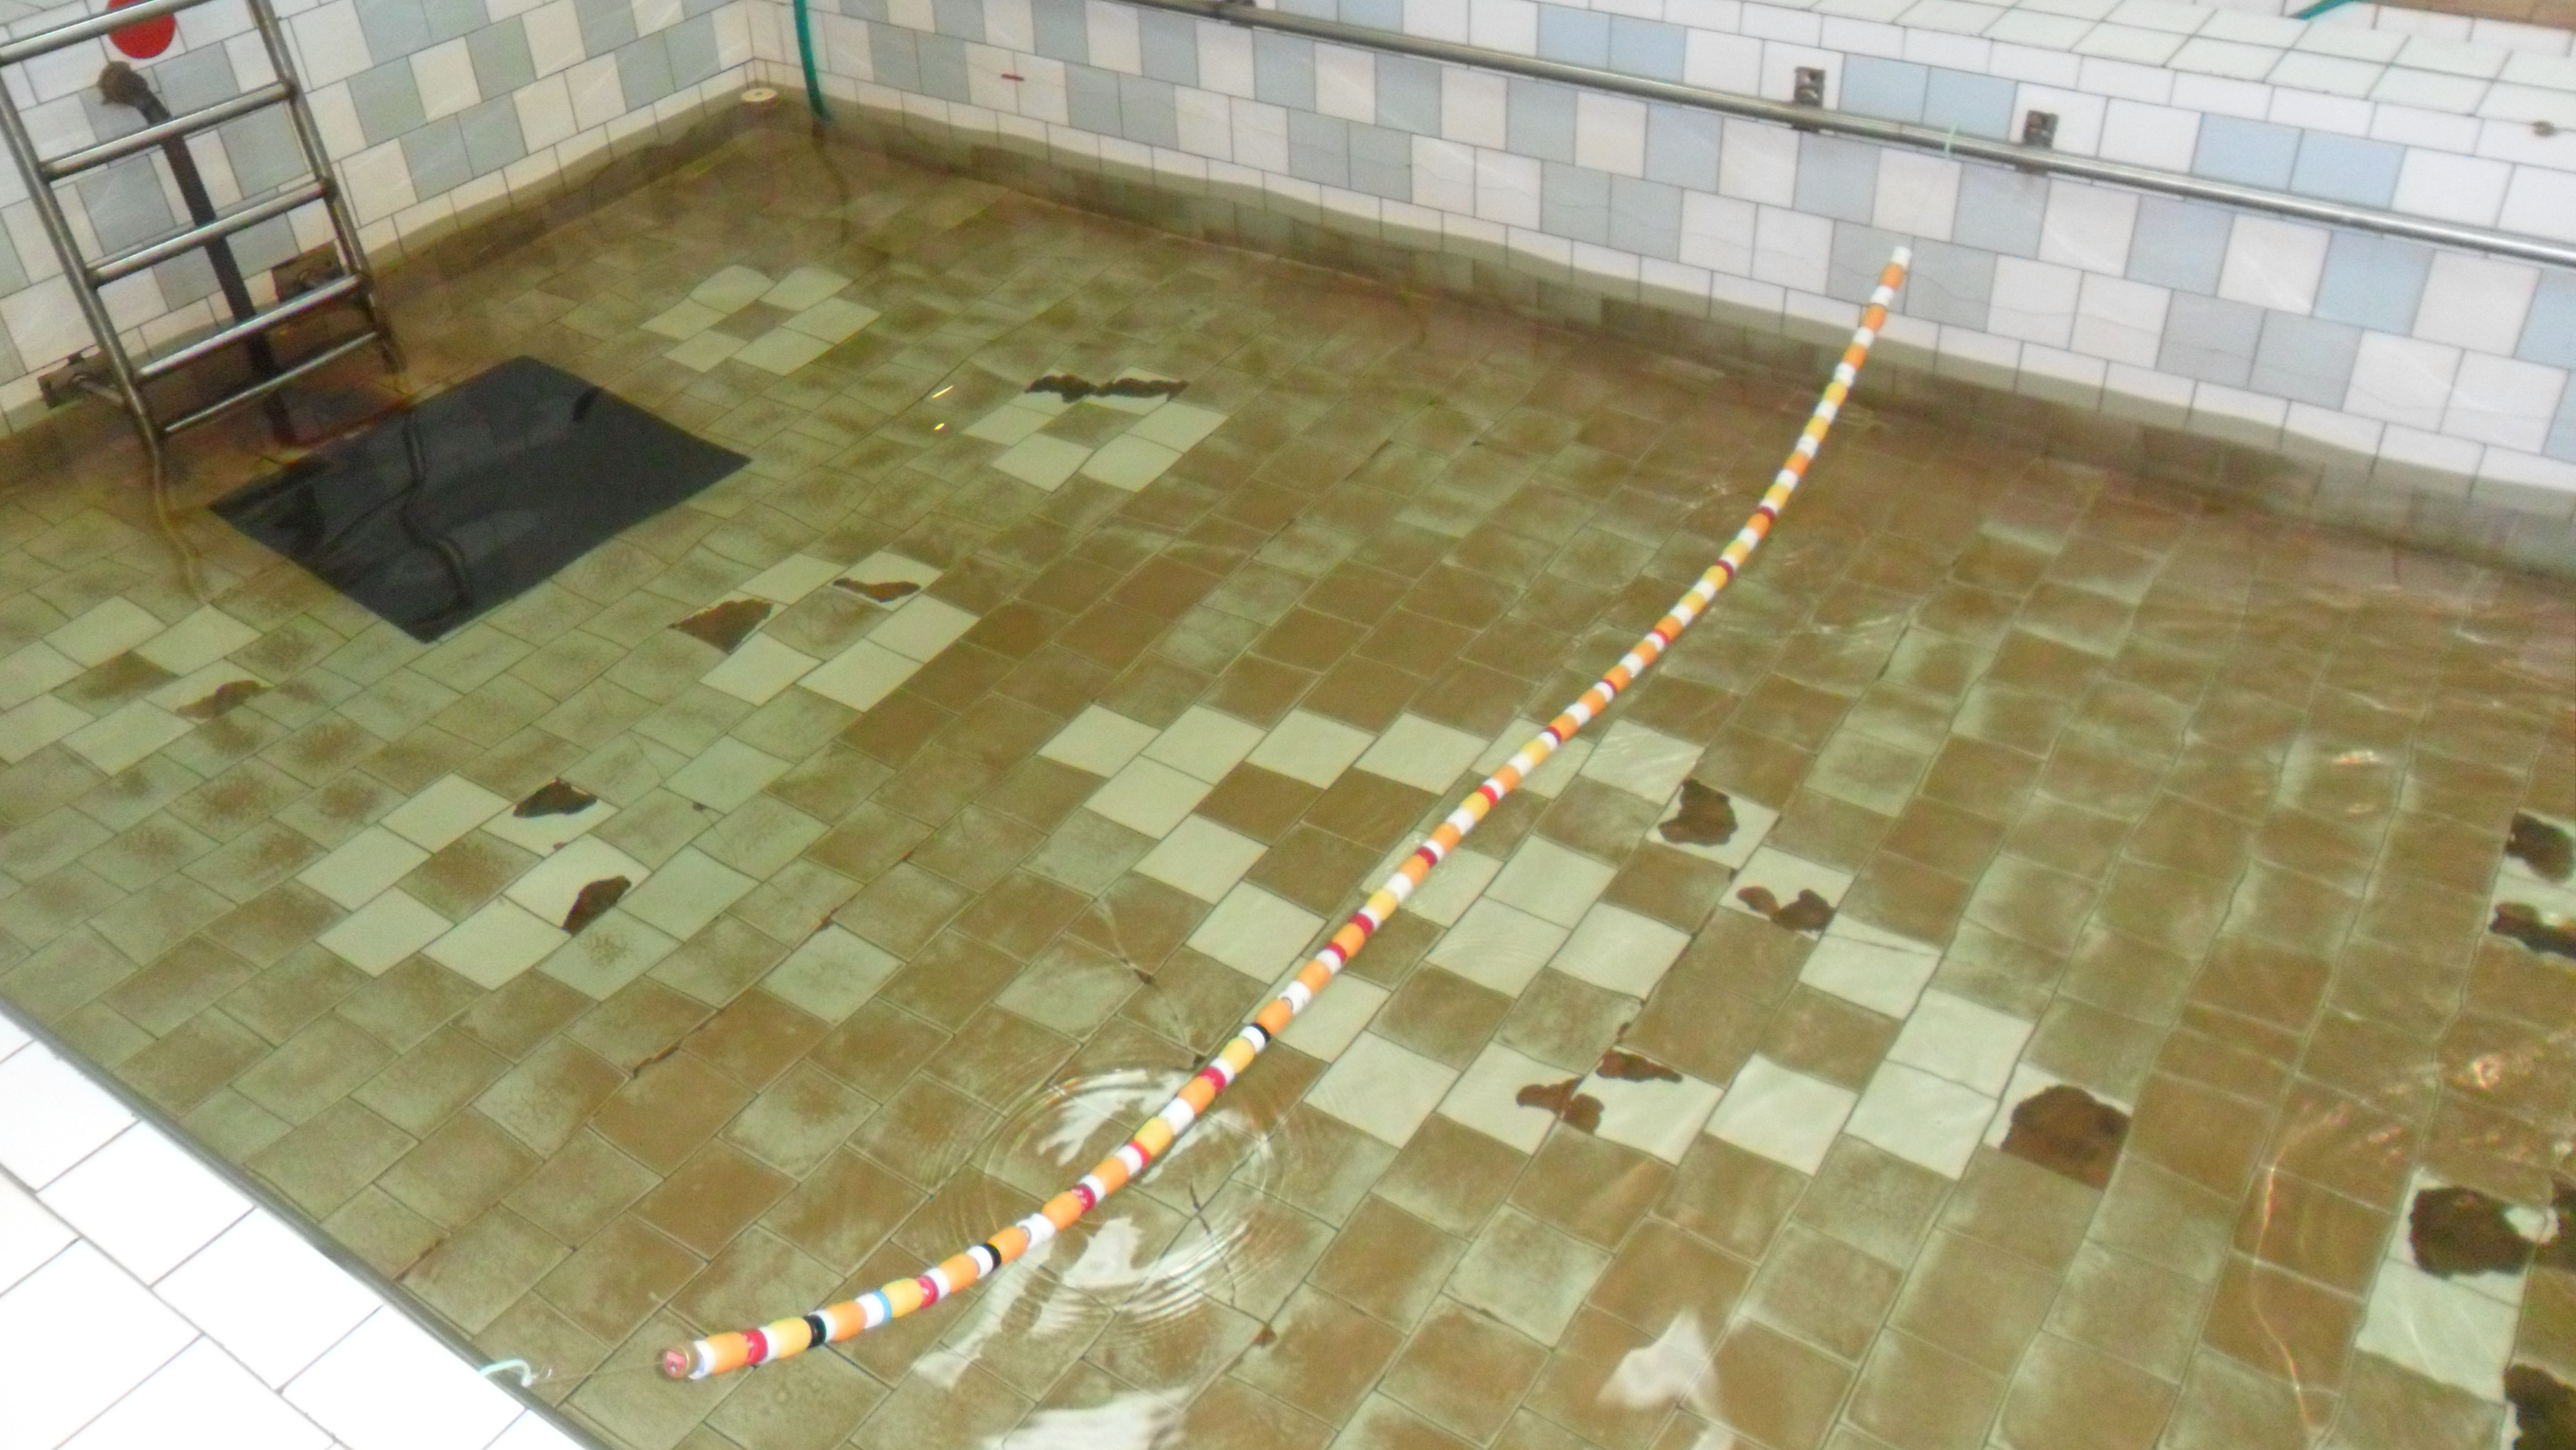 Изготовление и применение нестандартного оборудования на занятиях в бассейне